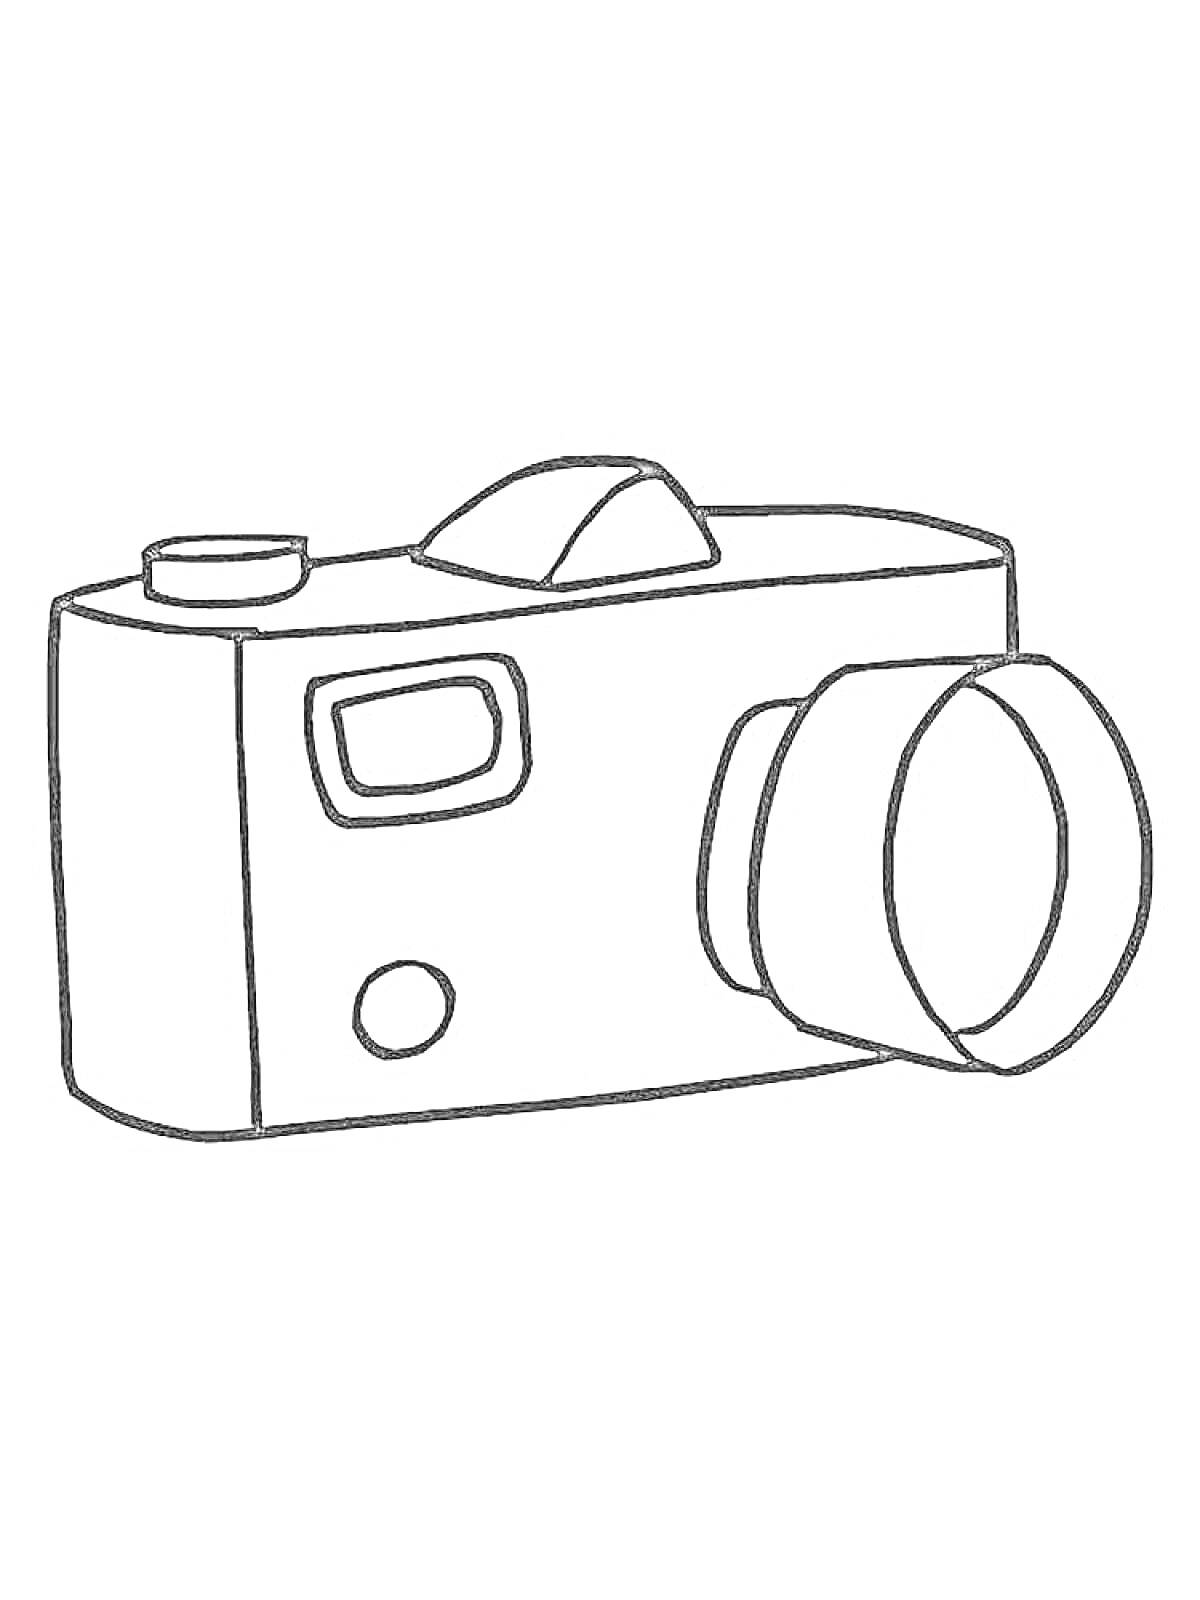 Фотоаппарат с объективом, кнопкой, экраном и видоискателем